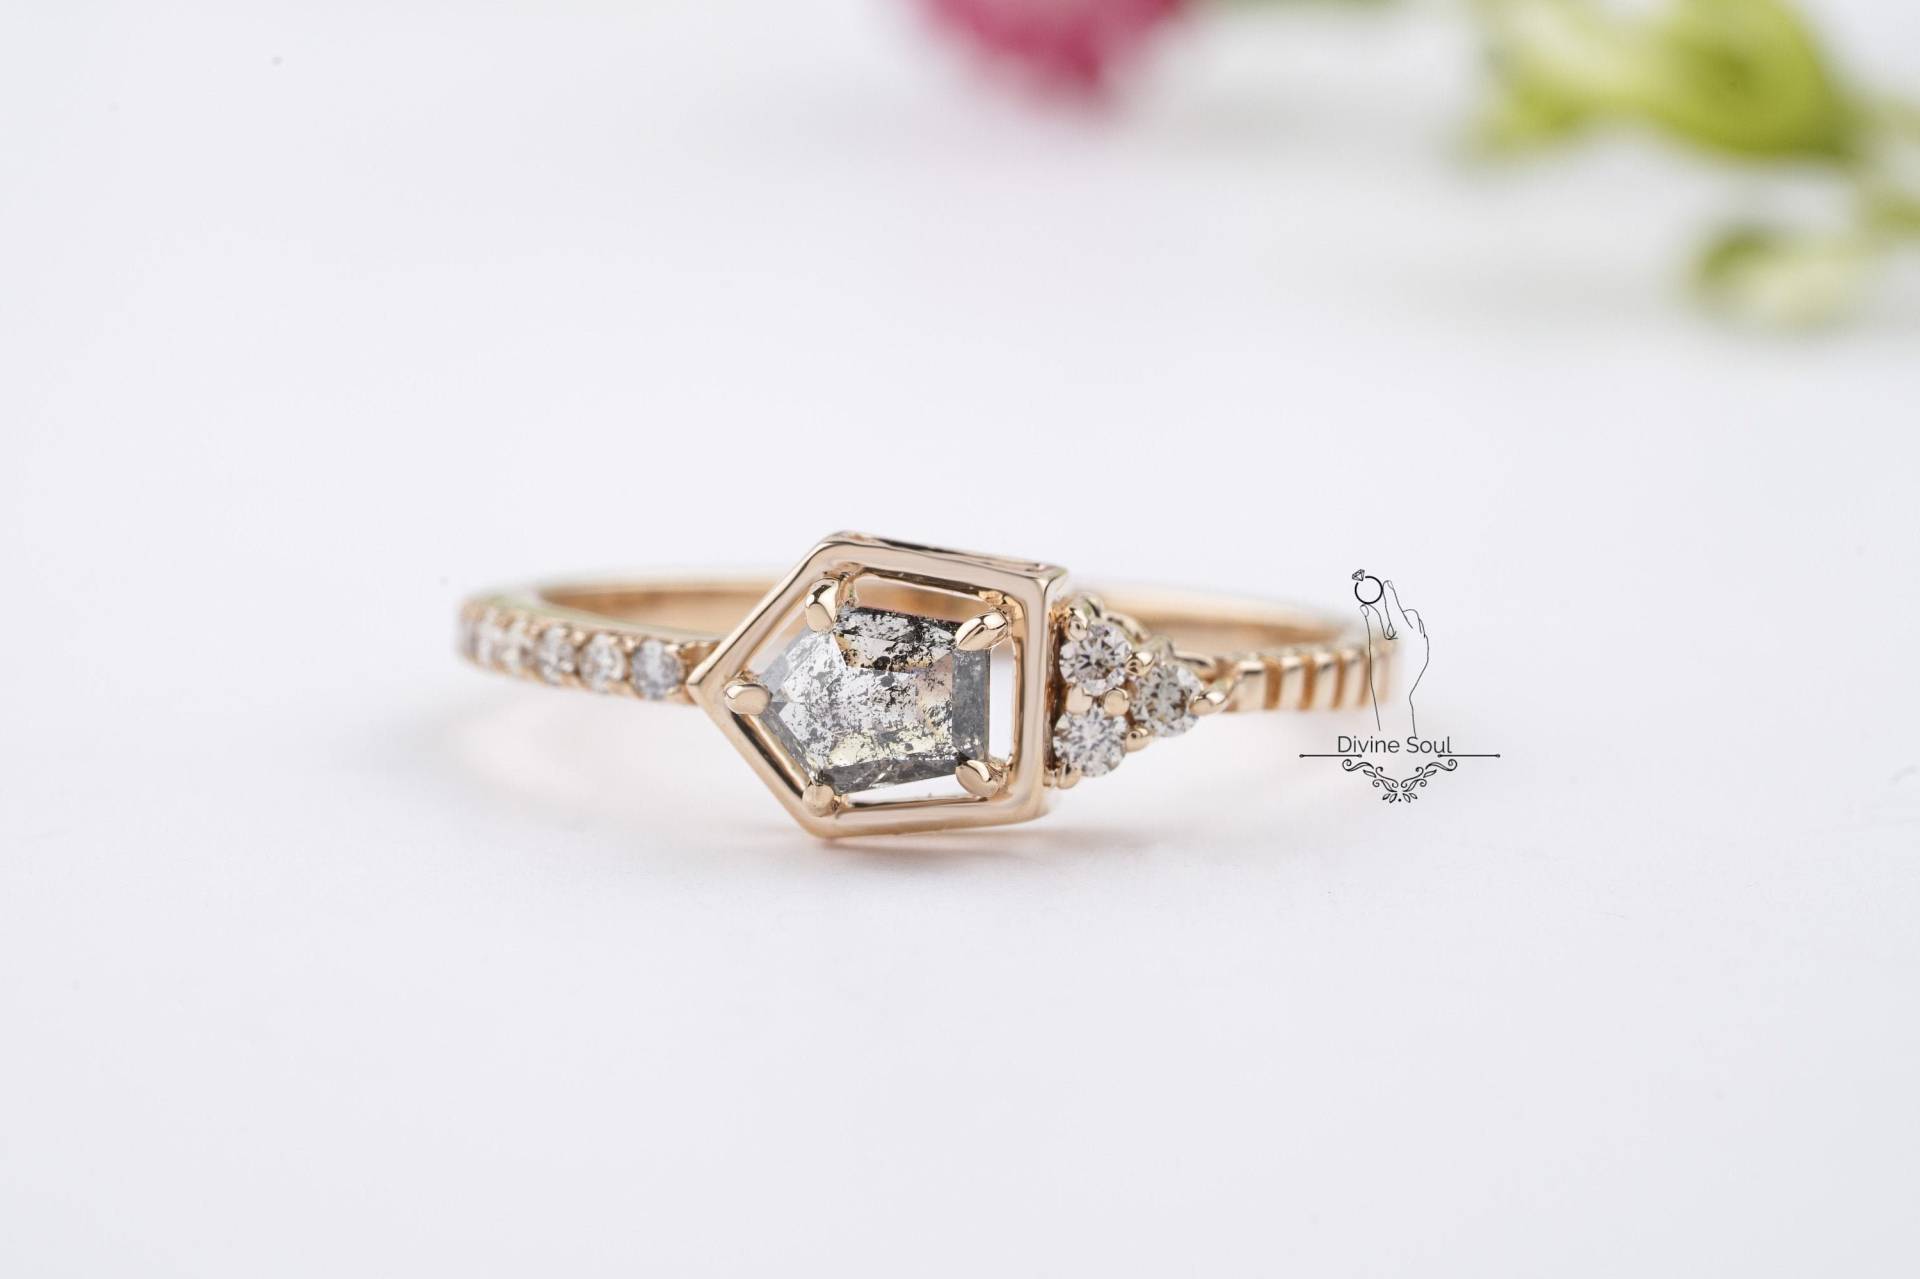 Einfacher Alltags-Diamant Ring | 14Kt Roségold Verlobungsring Unikat Ehering Roher Ungeschliffener Pentagon Salz Und Pfeffer Diamant von TheDivineSoulCo